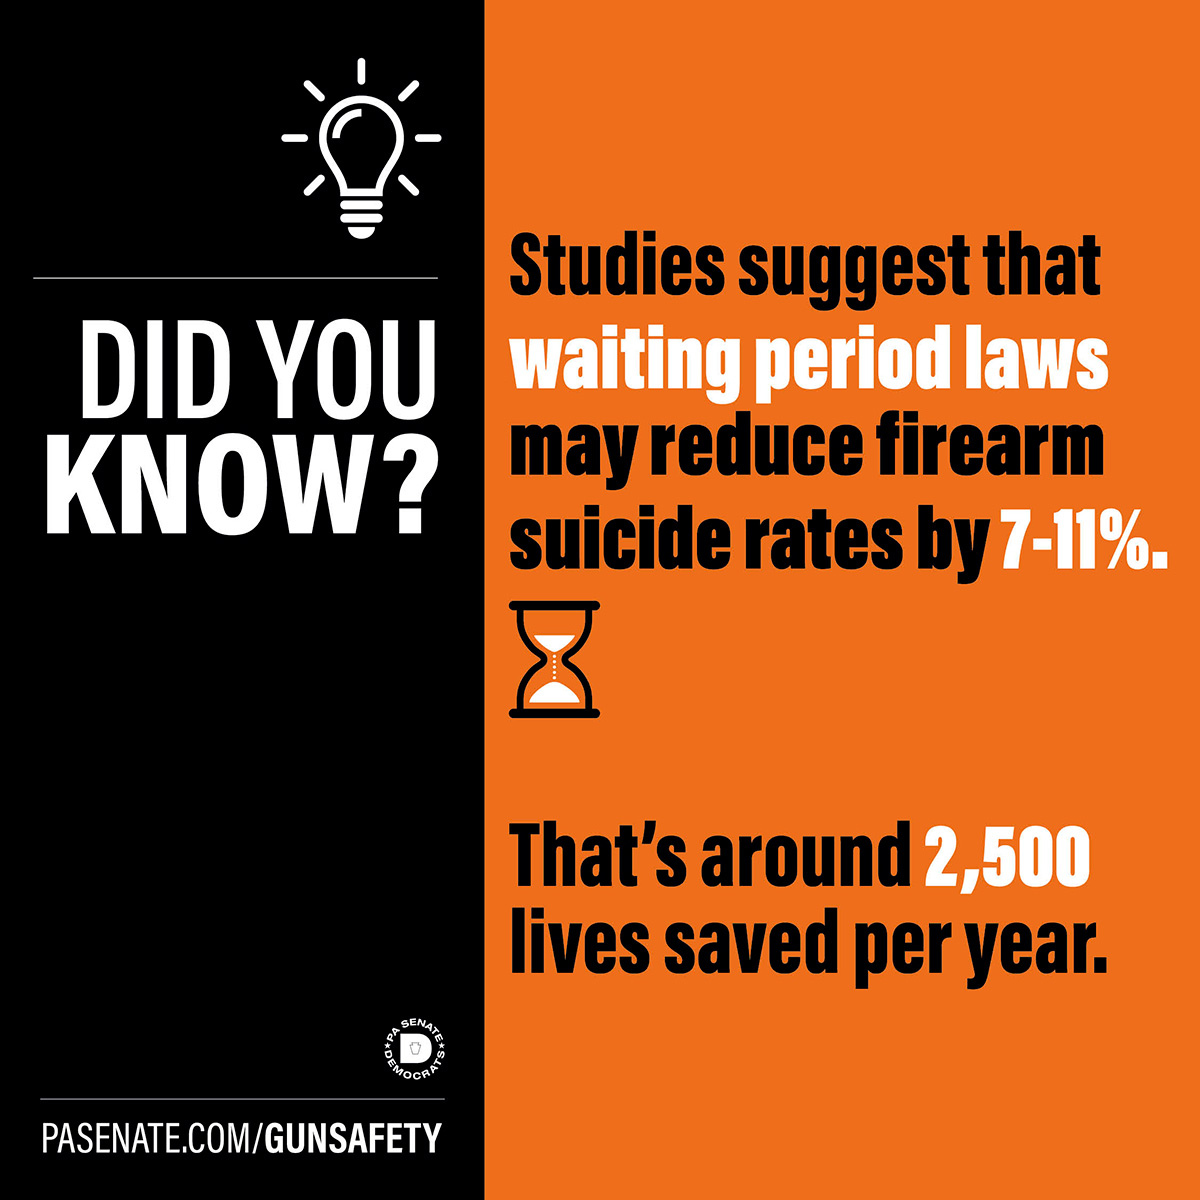 ¿Sabía que? Los estudios sugieren que las leyes sobre periodos de espera pueden reducir las tasas de suicidio por arma de fuego entre un 7 y un 11%.